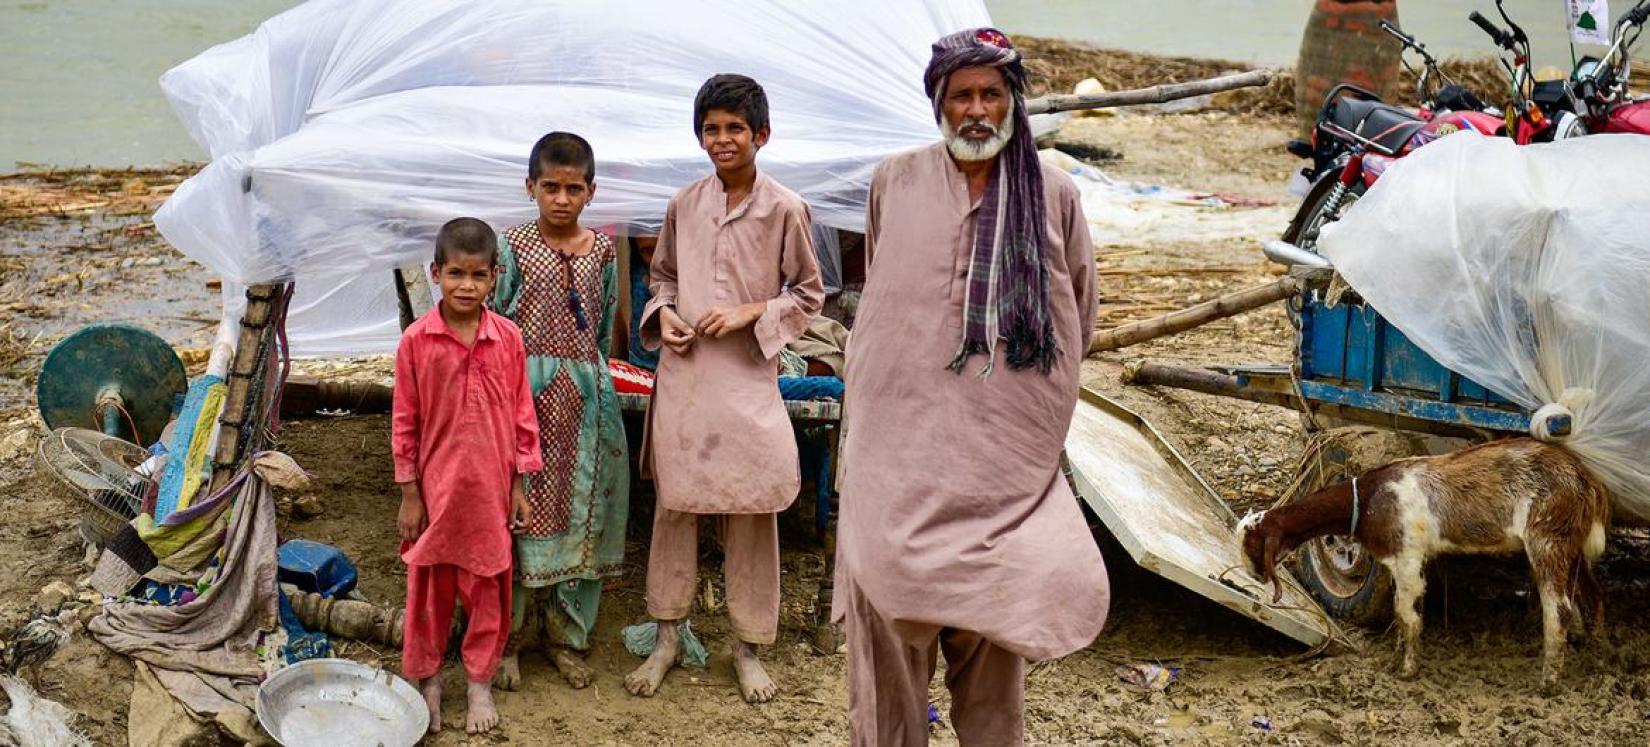 Famílias sobrevivem sem abrigo depois de se mudarem para um local mais seguro após enchentes atingirem vilarejos na província do Baluchistão, no Paquistão.